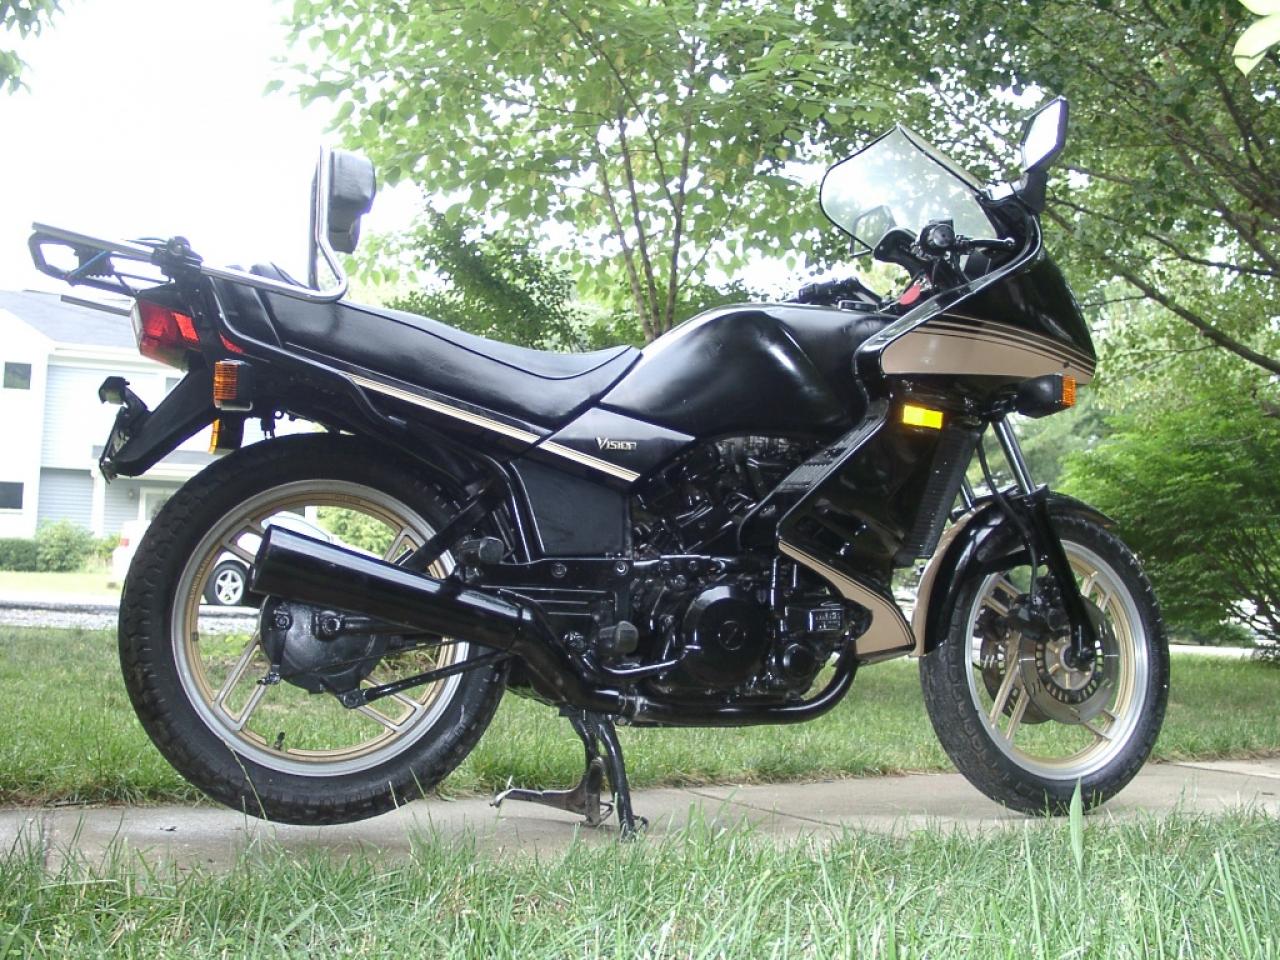 1983 Yamaha XZ 550 S - Moto.ZombDrive.COM